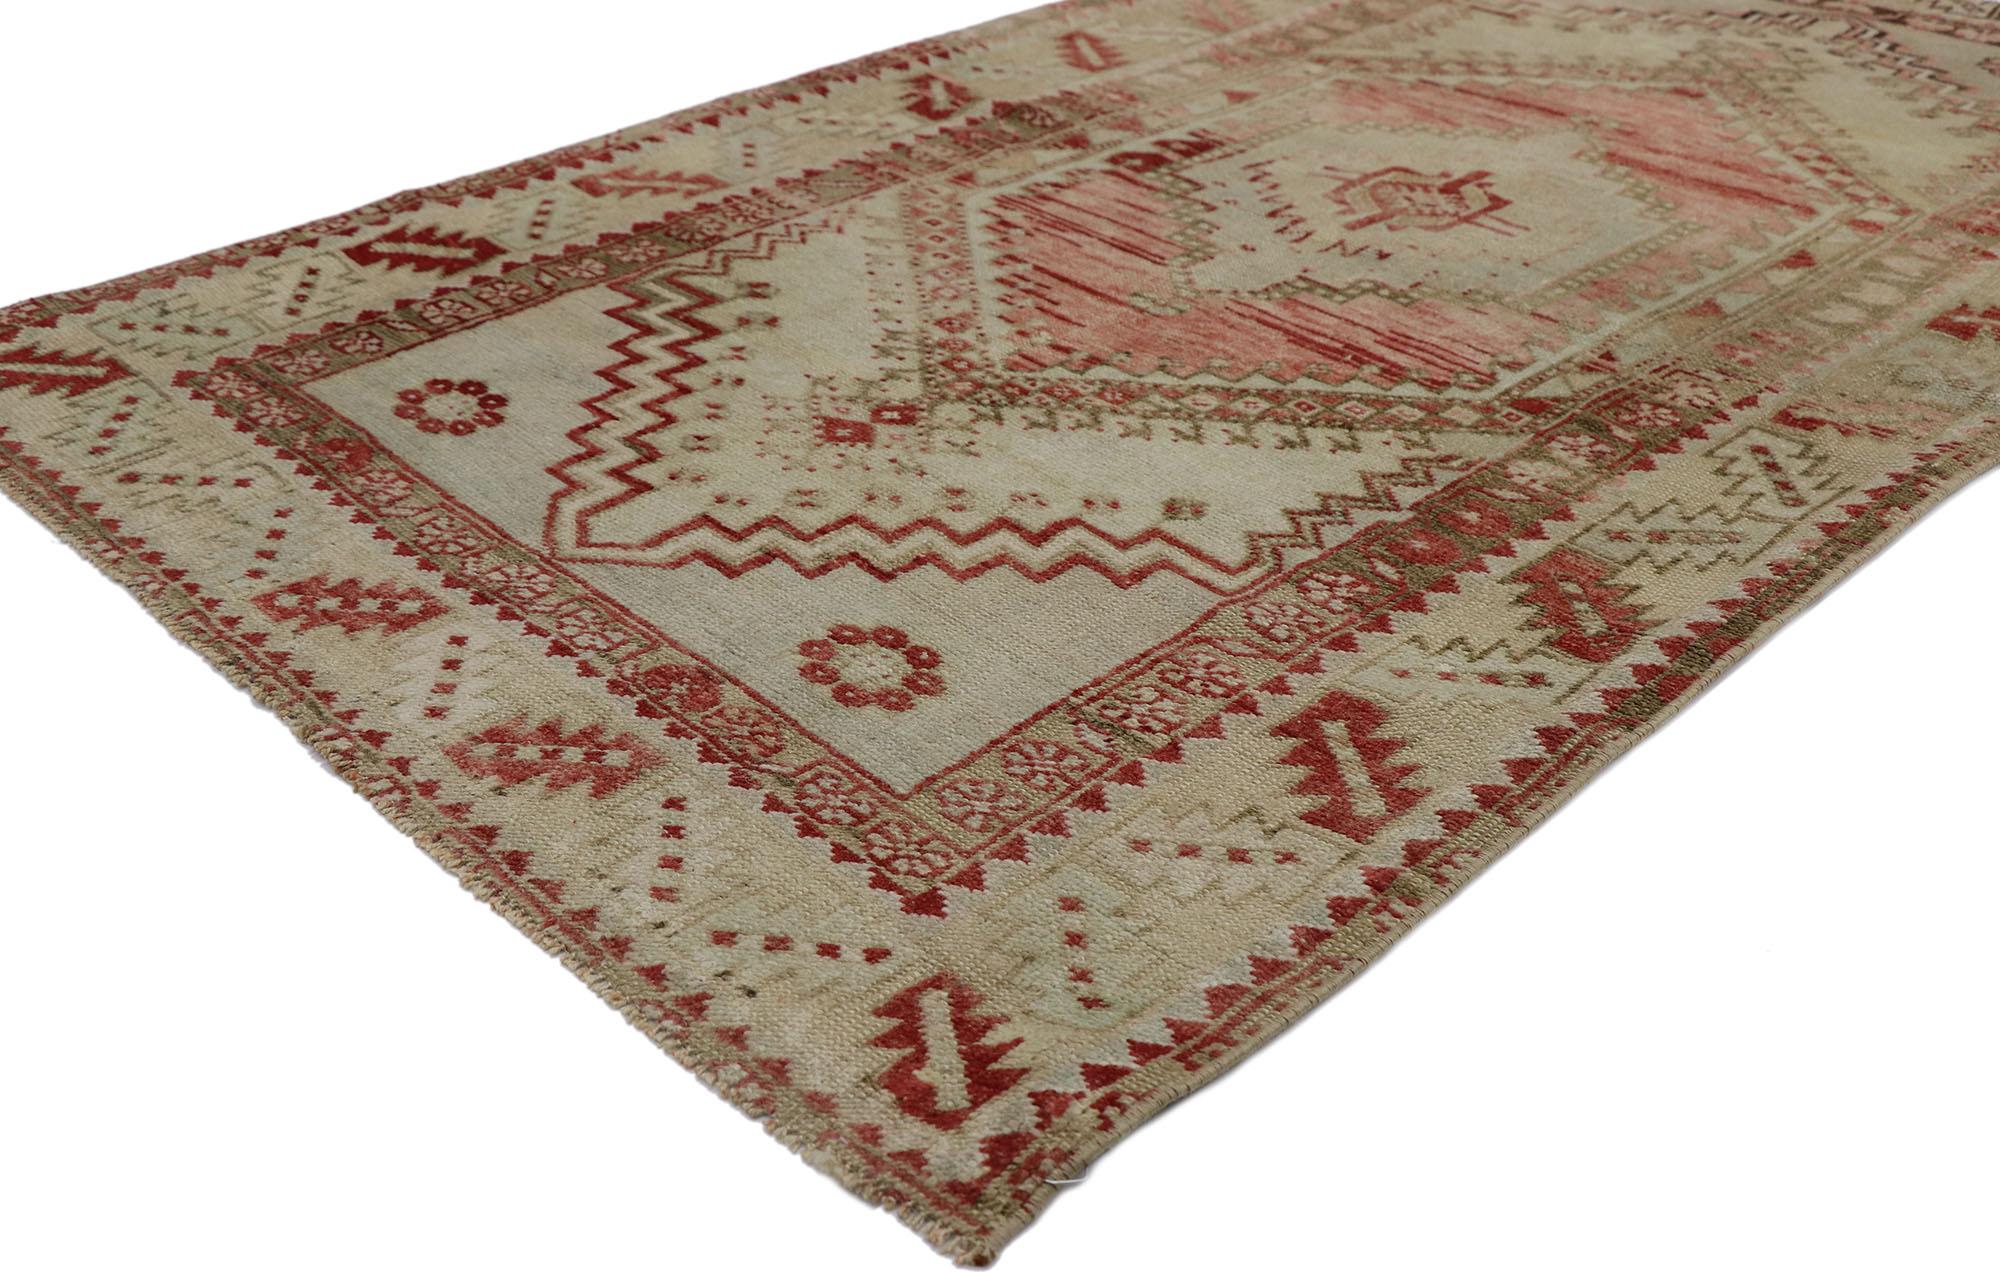 53571 Vieux tapis turc Oushak 03'03 x 05'06. Avec sa beauté séduisante et sa sensibilité rustique, ce tapis turc Oushak vintage en laine noué à la main est immergé dans l'histoire de l'Anatolie. Le champ découpé et abrasé présente un médaillon